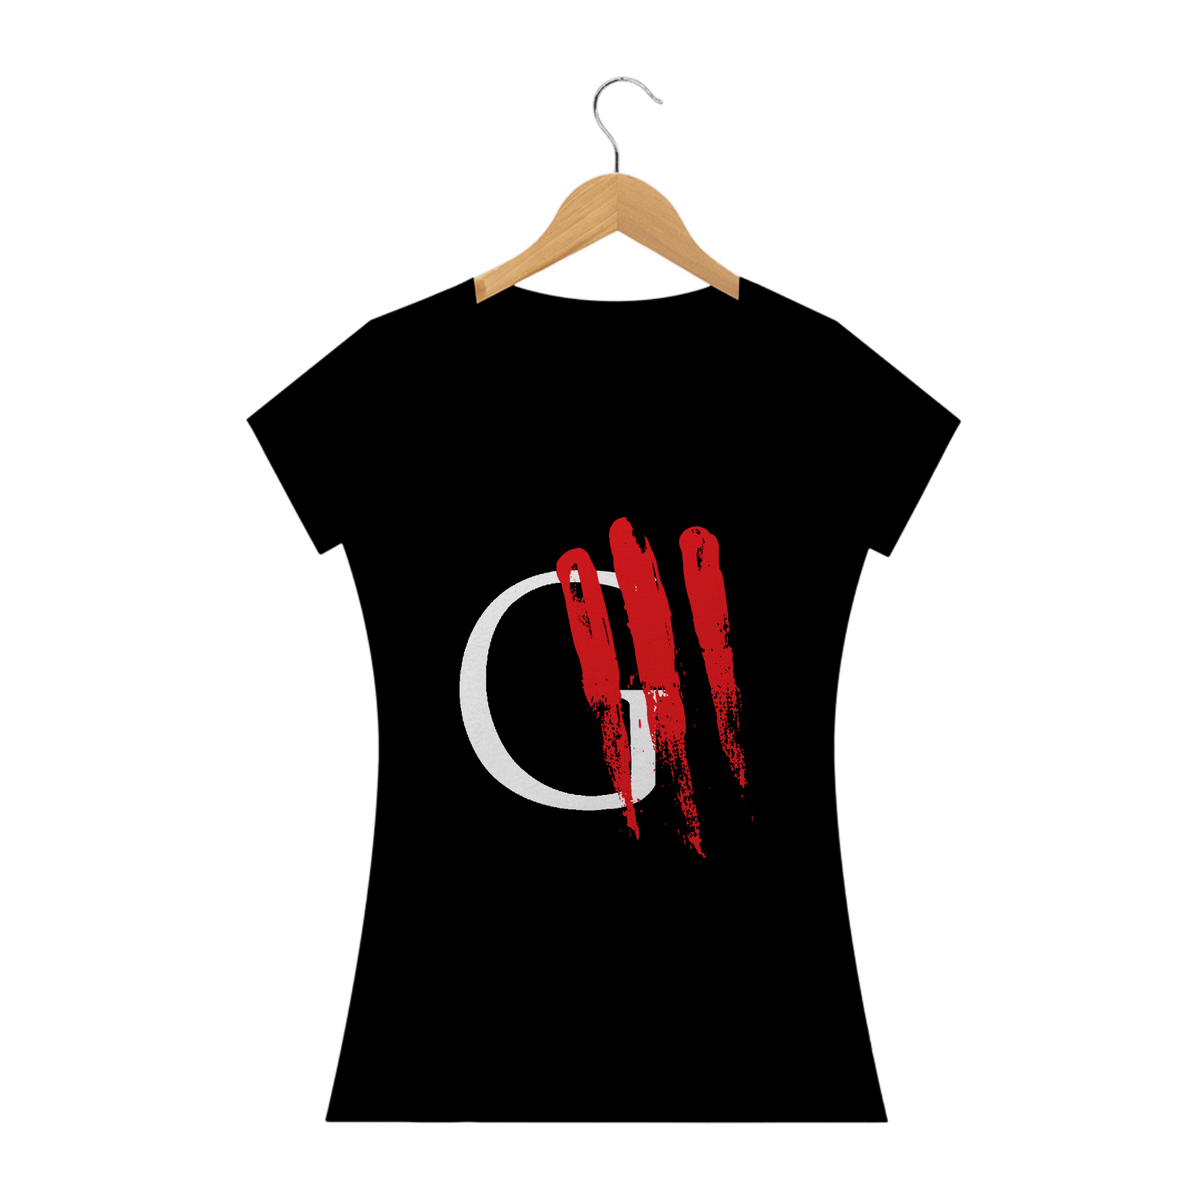 Nome do produto: Camiseta Baby-look Oficina G3 (cores escuras)